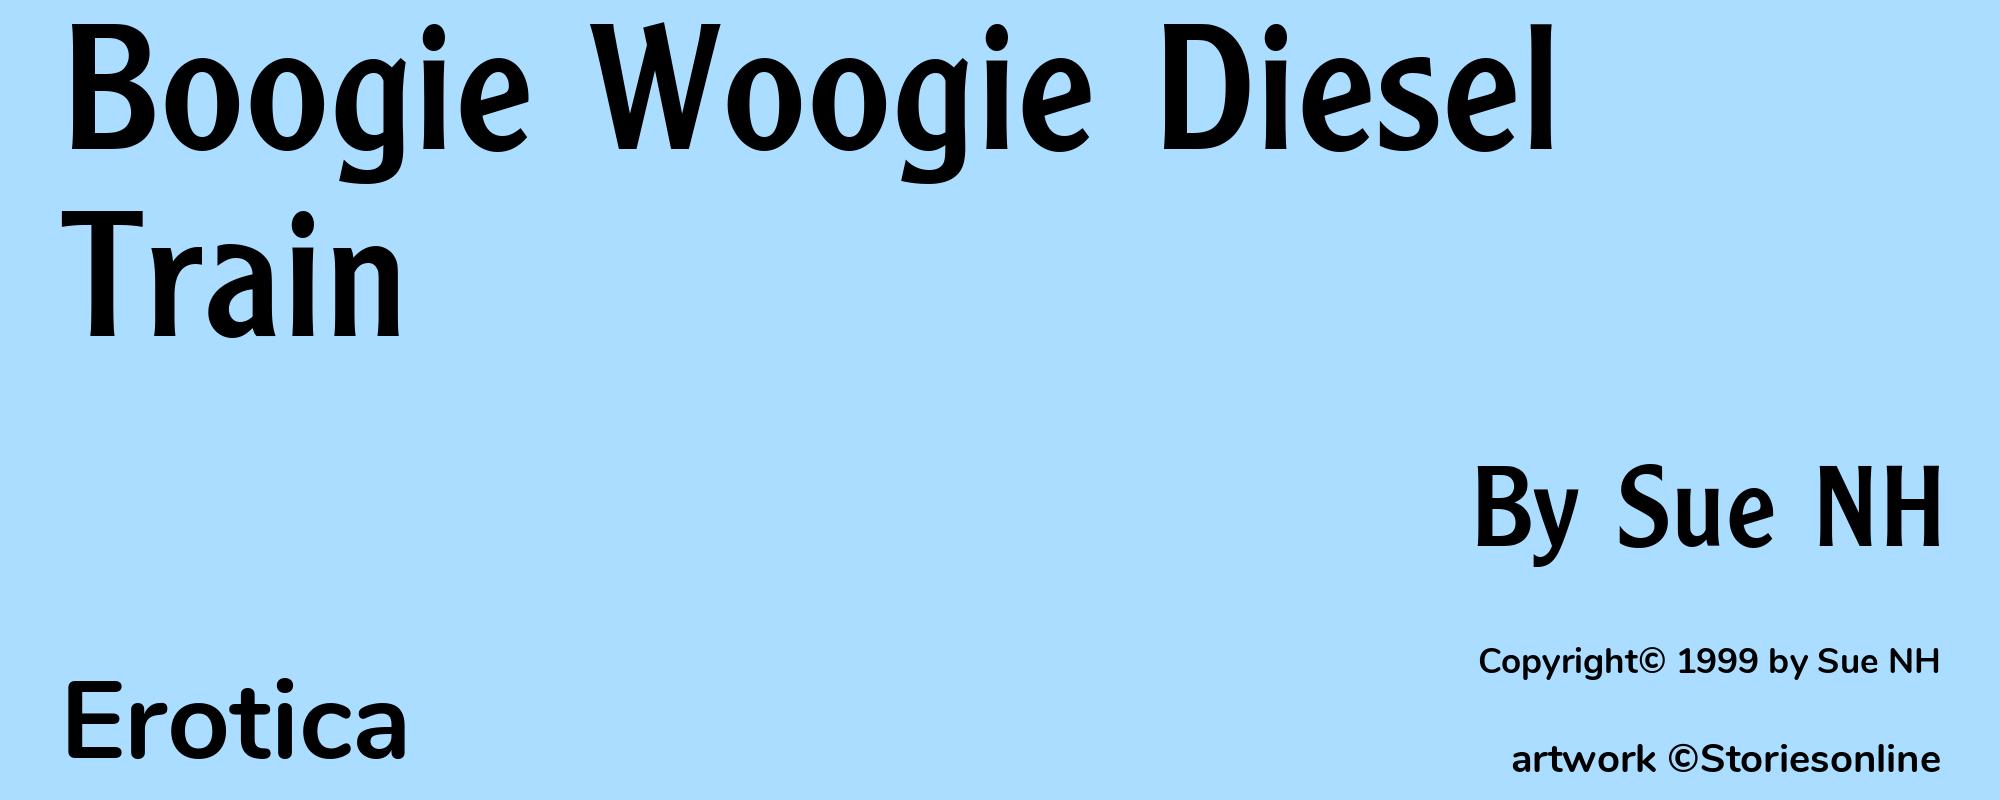 Boogie Woogie Diesel Train - Cover